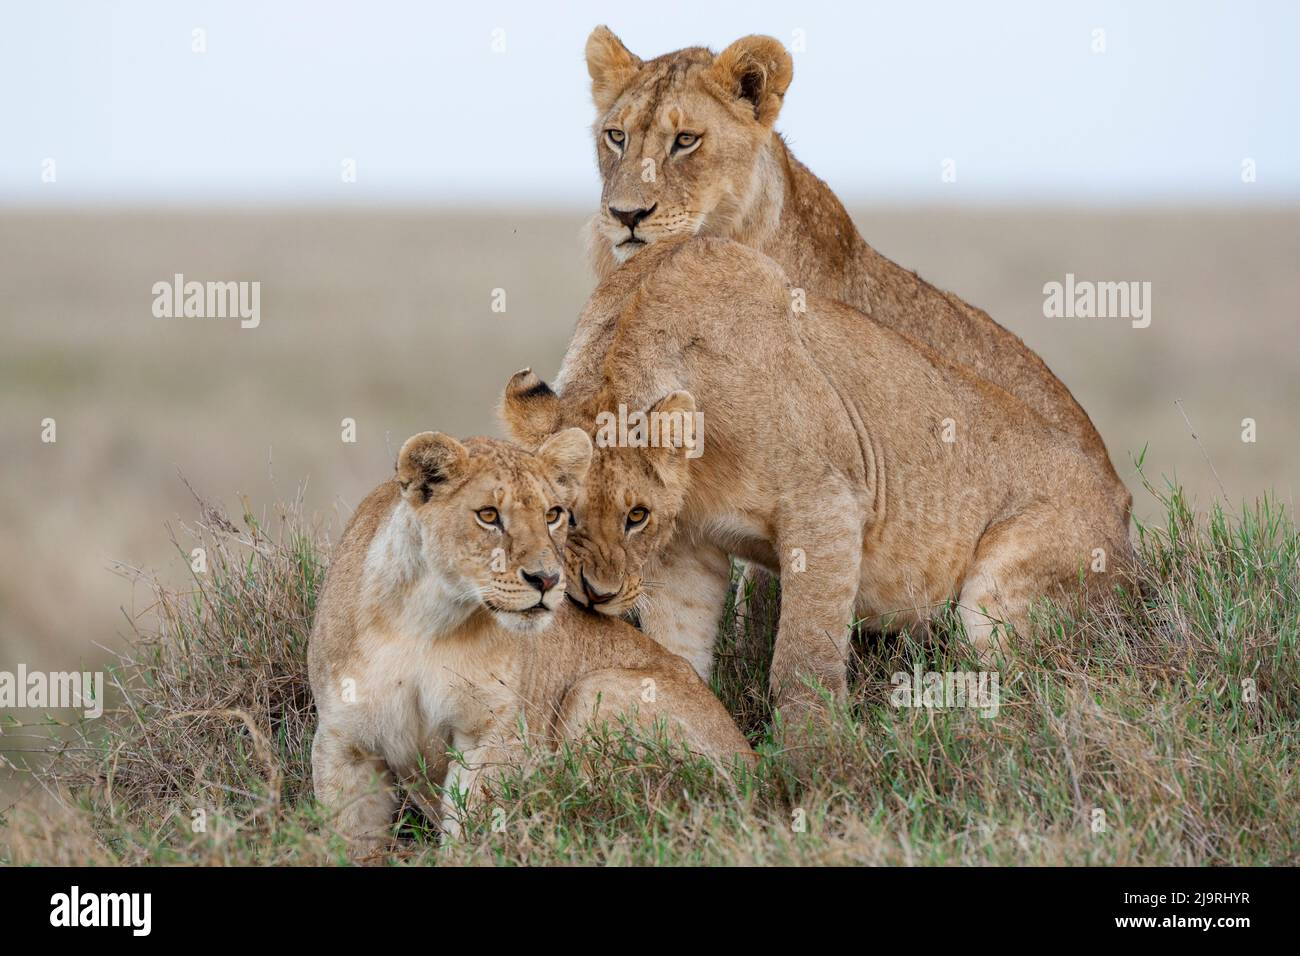 Afrika, Tansania. Eine Löwin sitzt mit ihren beiden Jungen. Stockfoto